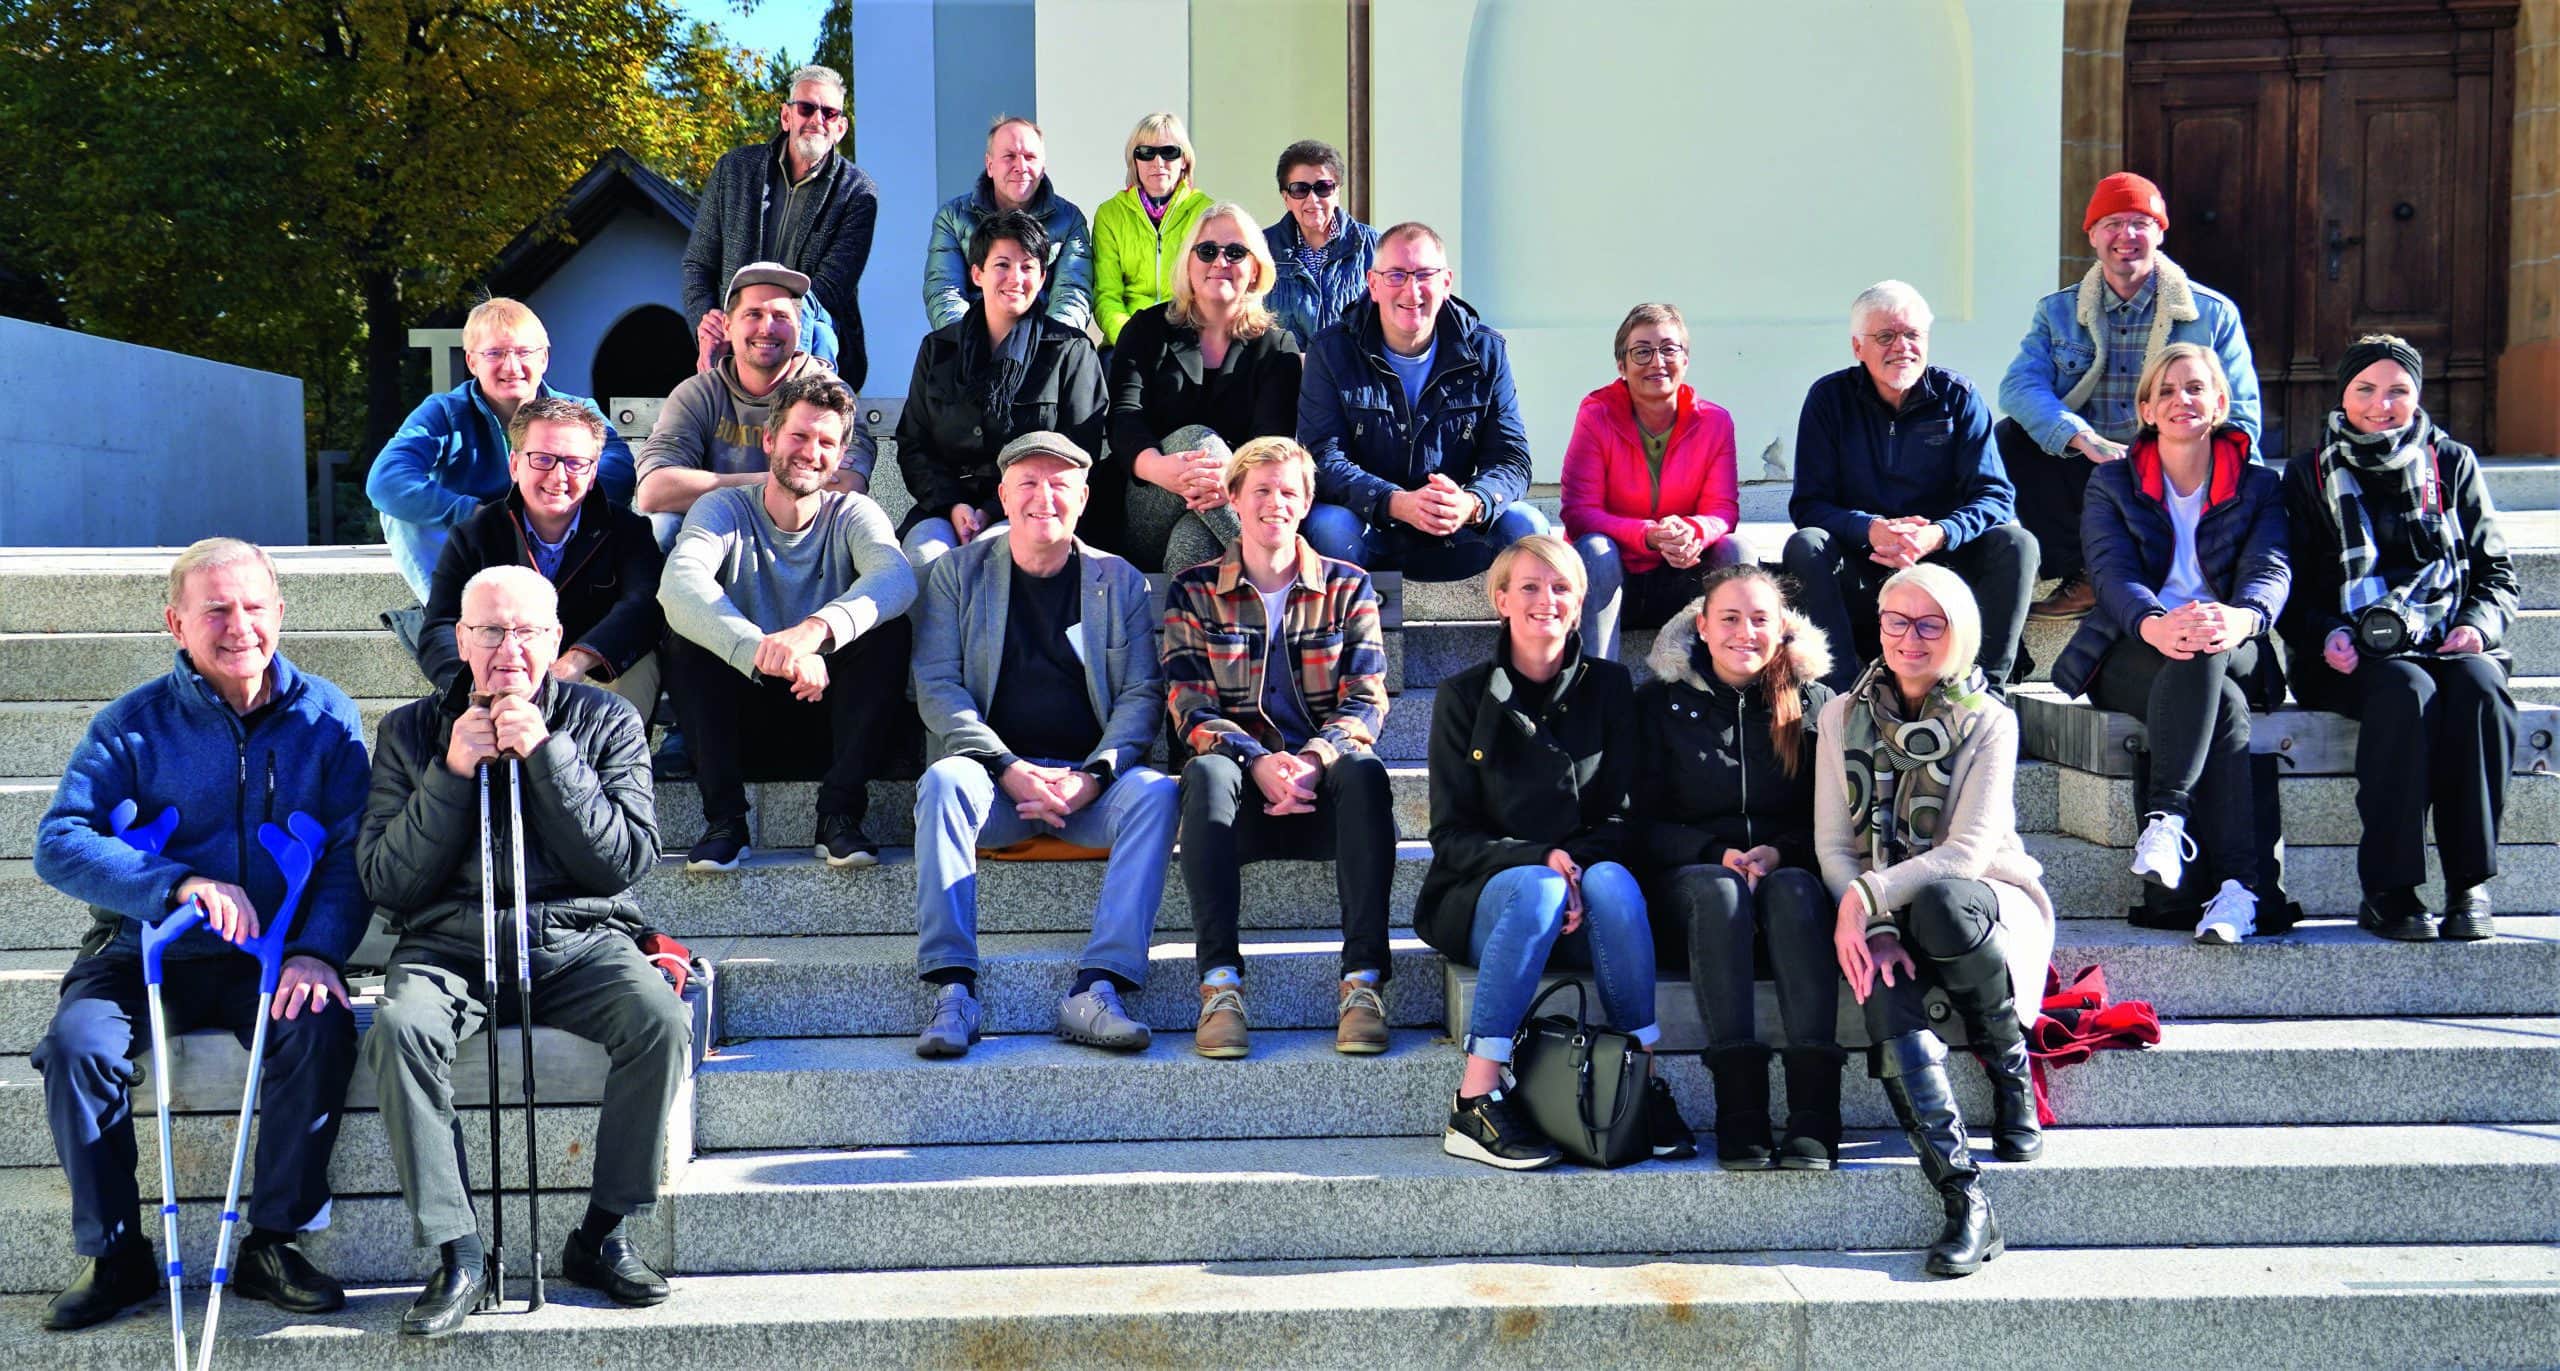 Mitglieder und UnterstützerInnen der Liste neu beim Pressetermin am 27. Oktober 2021 in Wattens